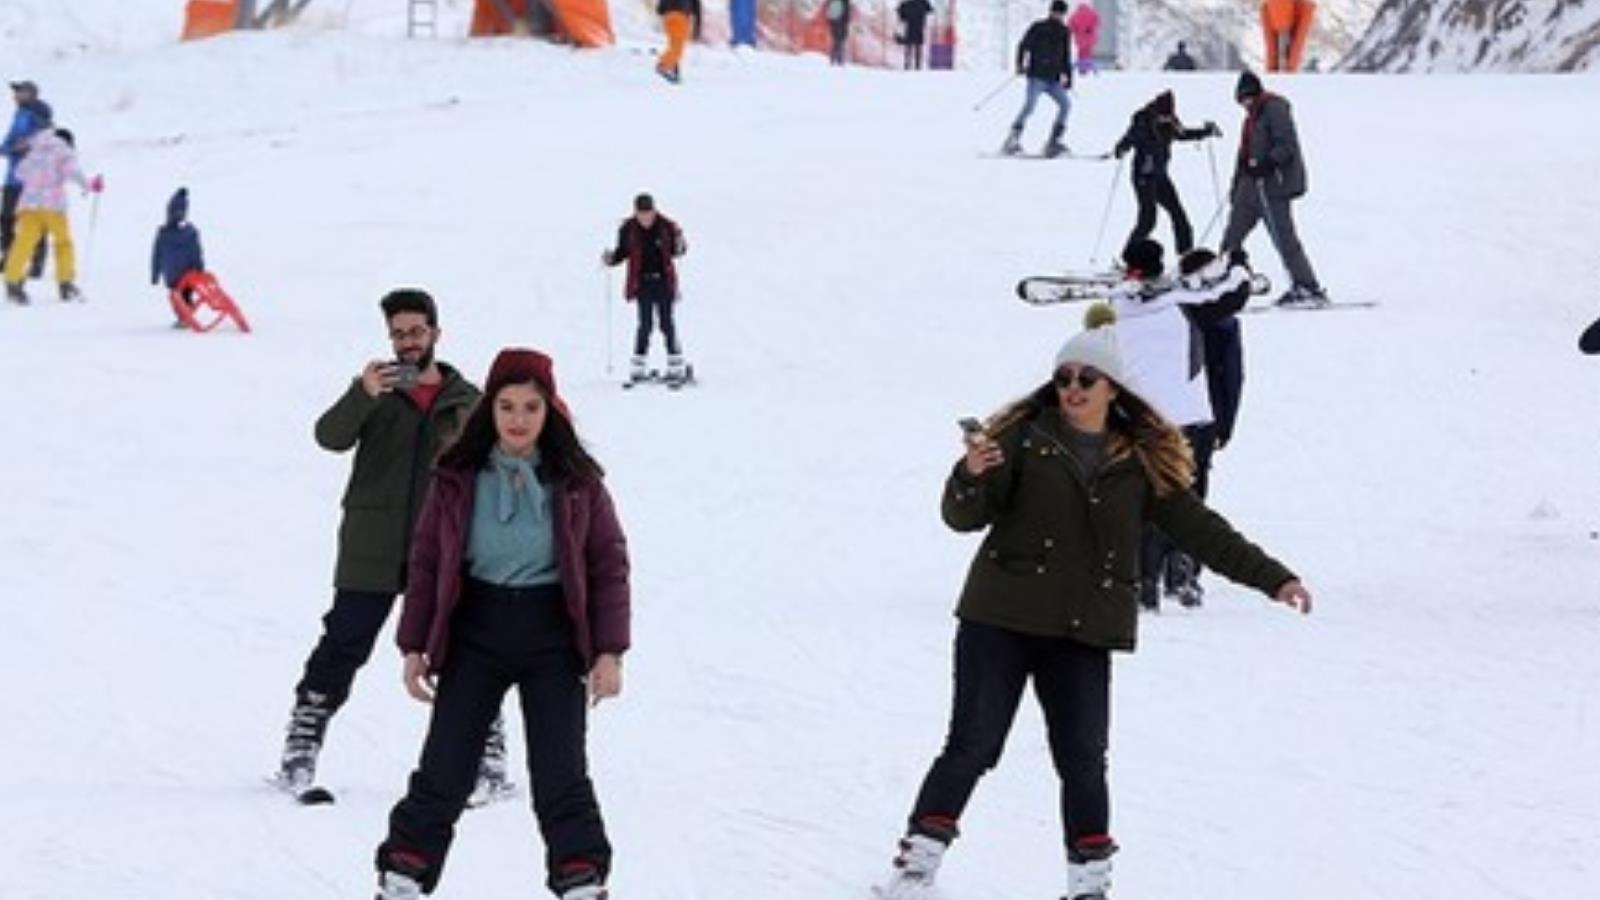 ‪بورصة التركية هي المكان المفضل لعشاق التزلج على الثلج خلال إجازة رأس السنة‬ (الجزيرة)